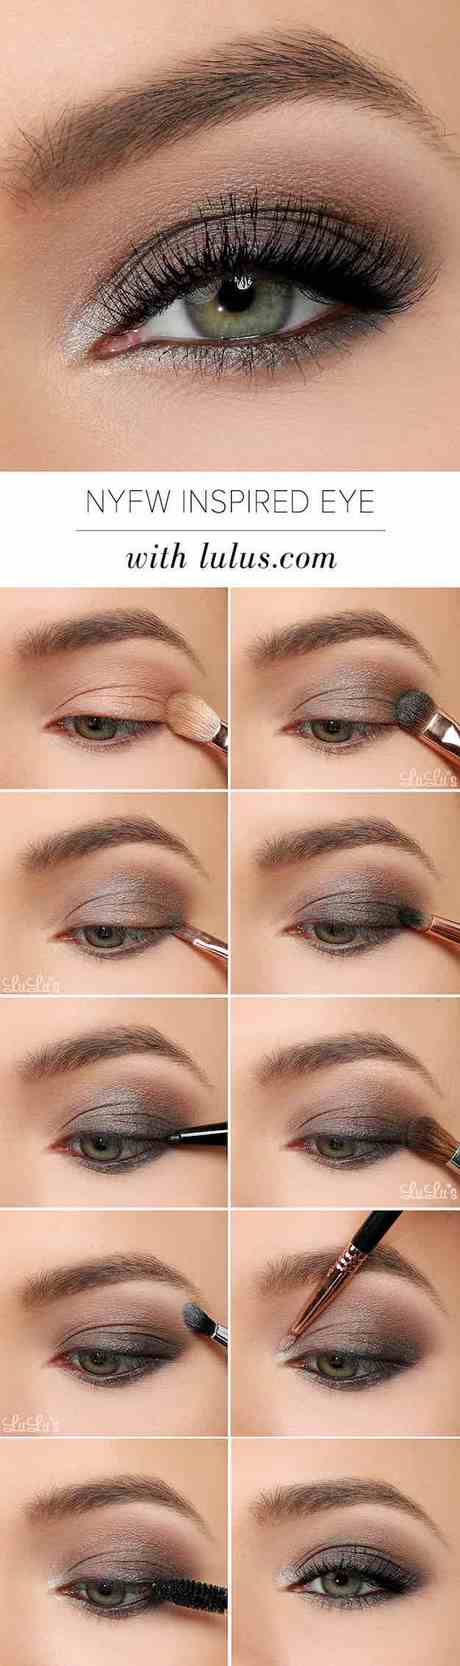 eye-makeup-tutorial-for-green-eyes-76_8 Oogmakeup les voor groene ogen